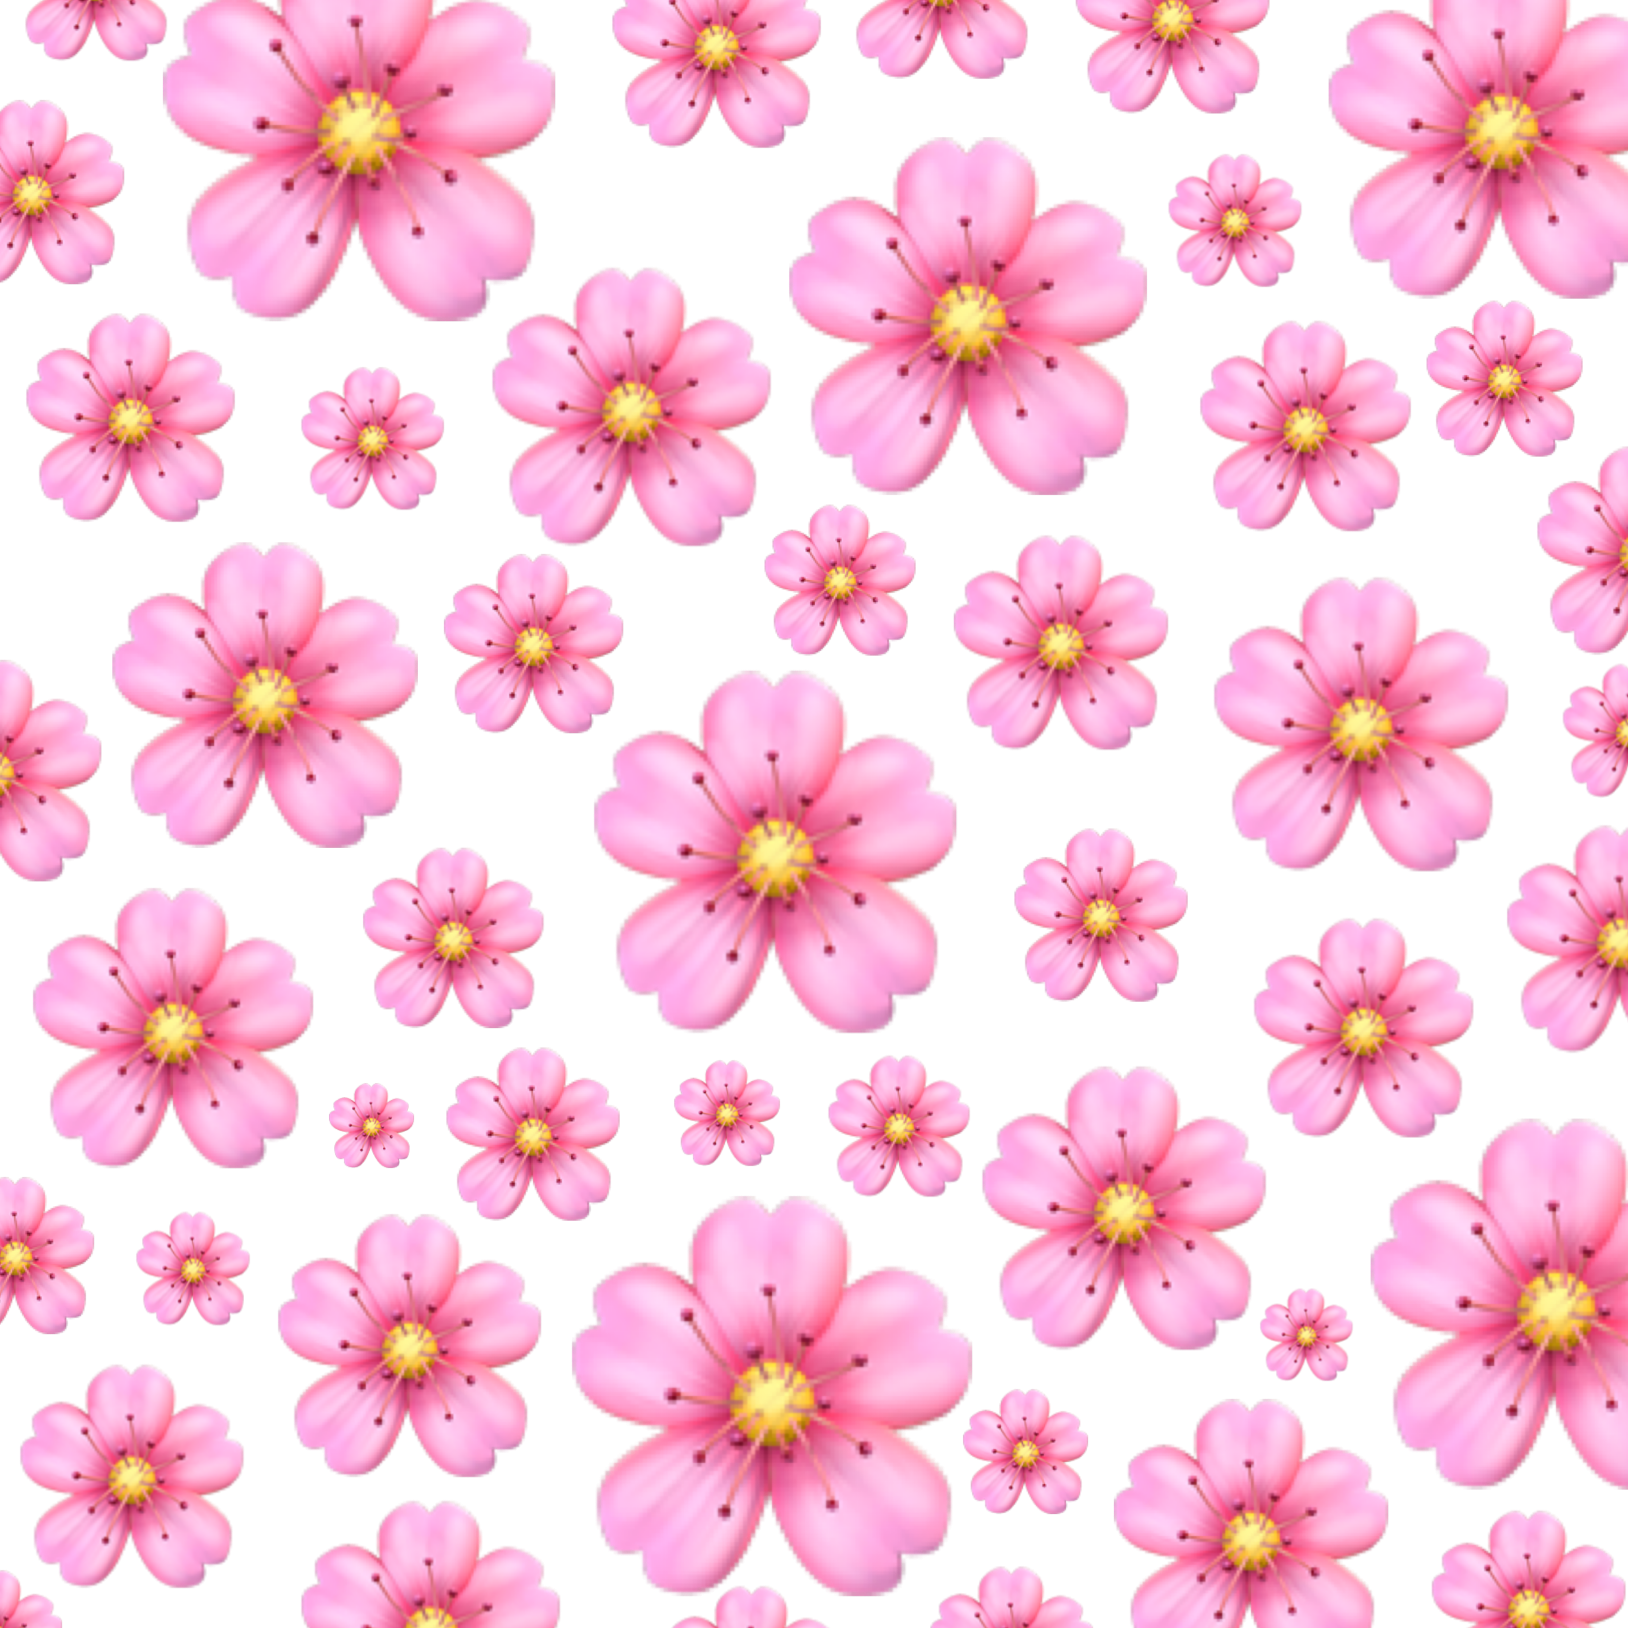 Мелкие розовые цветы. Маленькие розовые цветочки. Фон в мелкий цветочек. Фон мелкие розовые цветы.